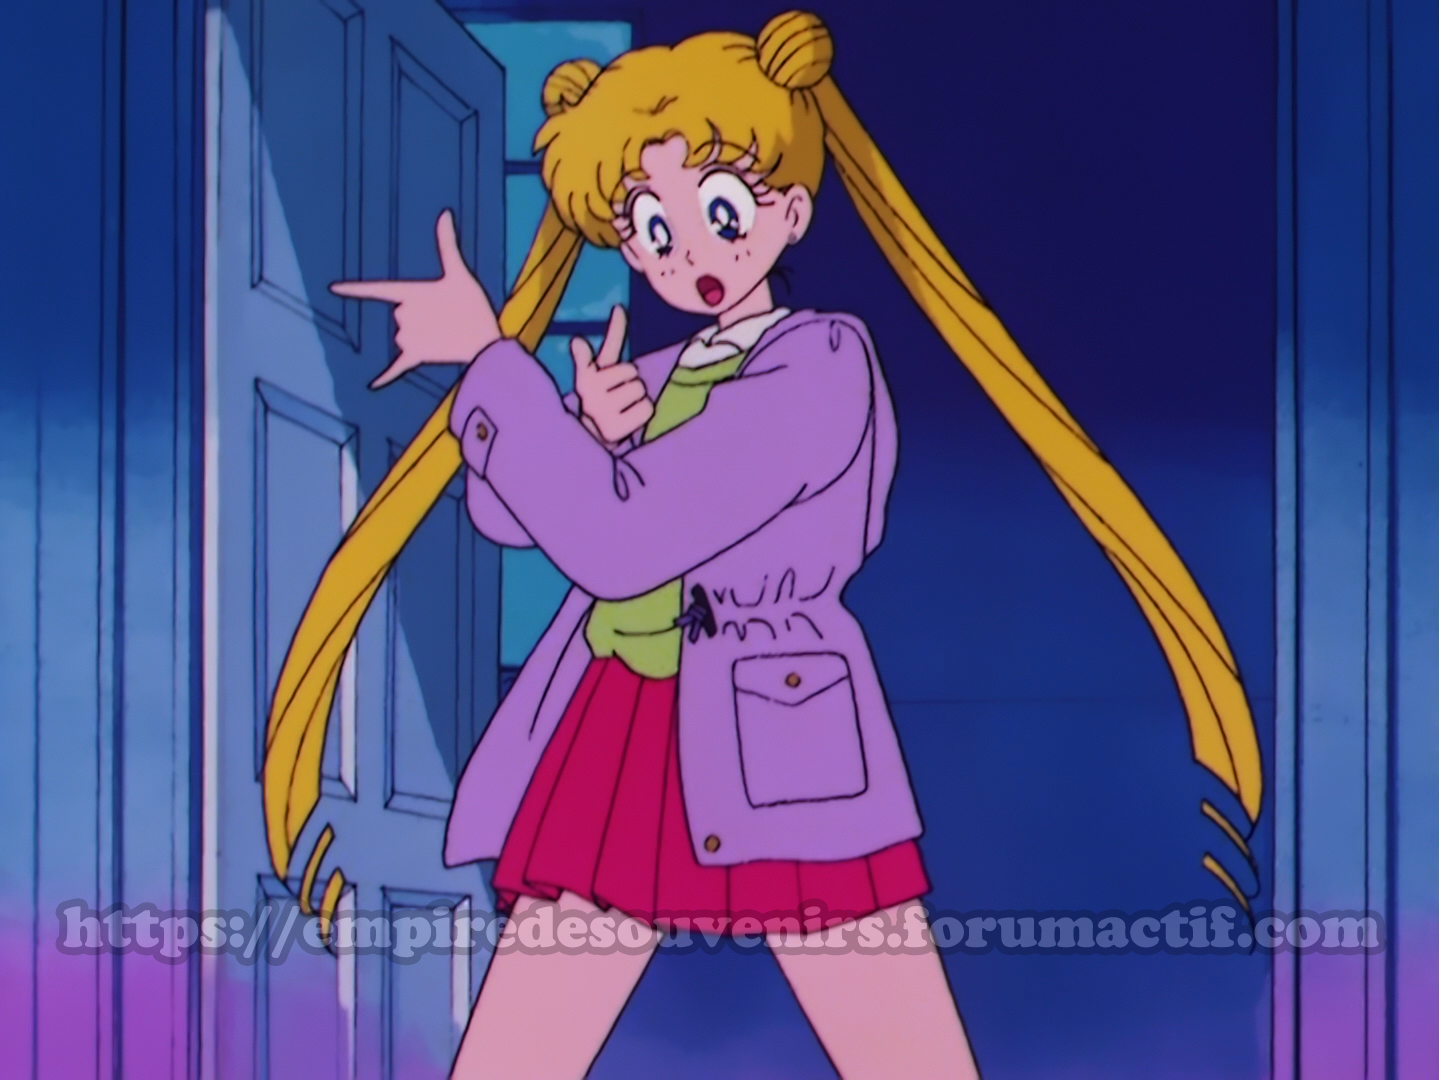 [Dossier] Les censures dans Sailor Moon Gyyf